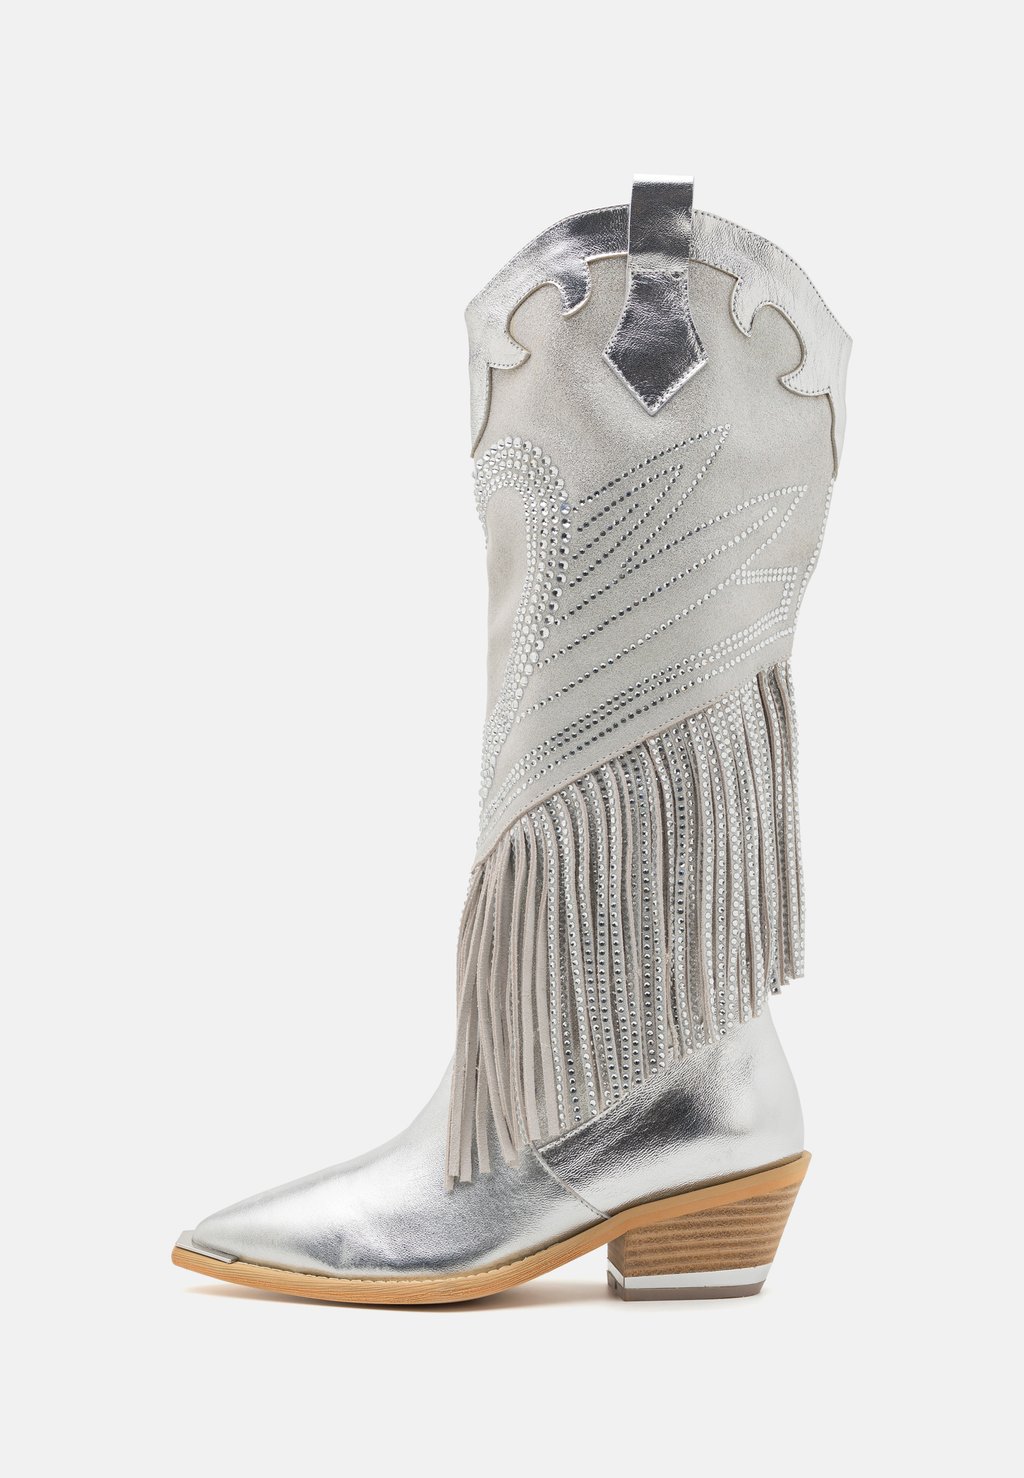 Техасские/байкерские ботинки Alma en Pena, серебро техасские байкерские ботинки alma en pena песочный